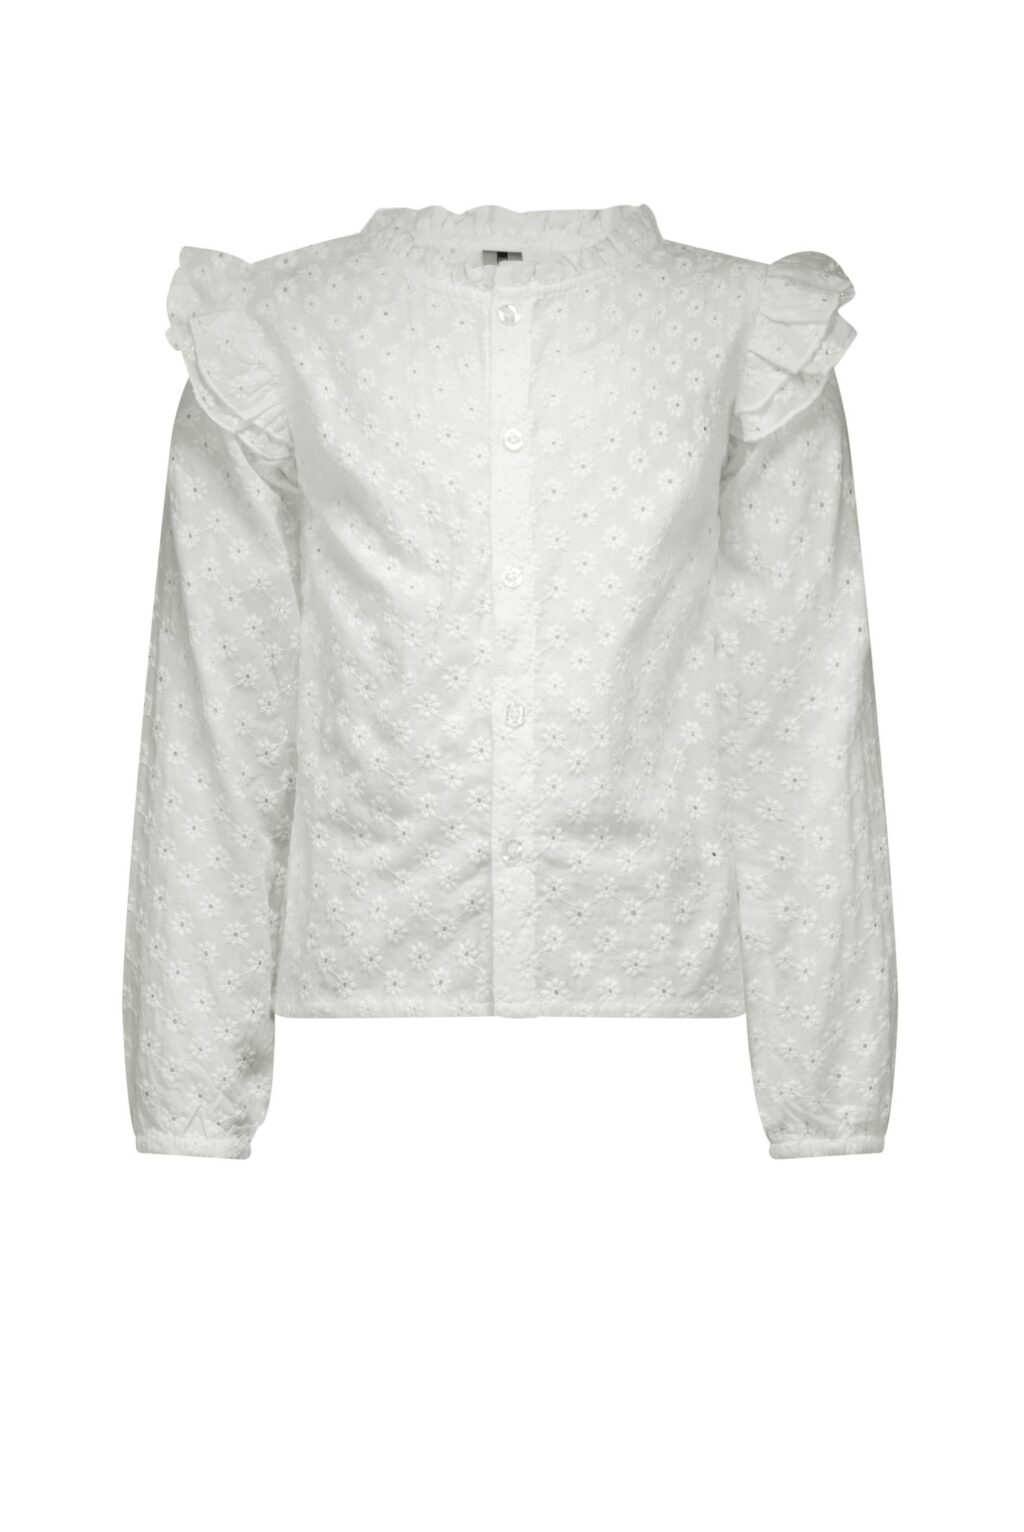 B.Nosy Meisjes blouse - Cotton ~ Spinze.nl